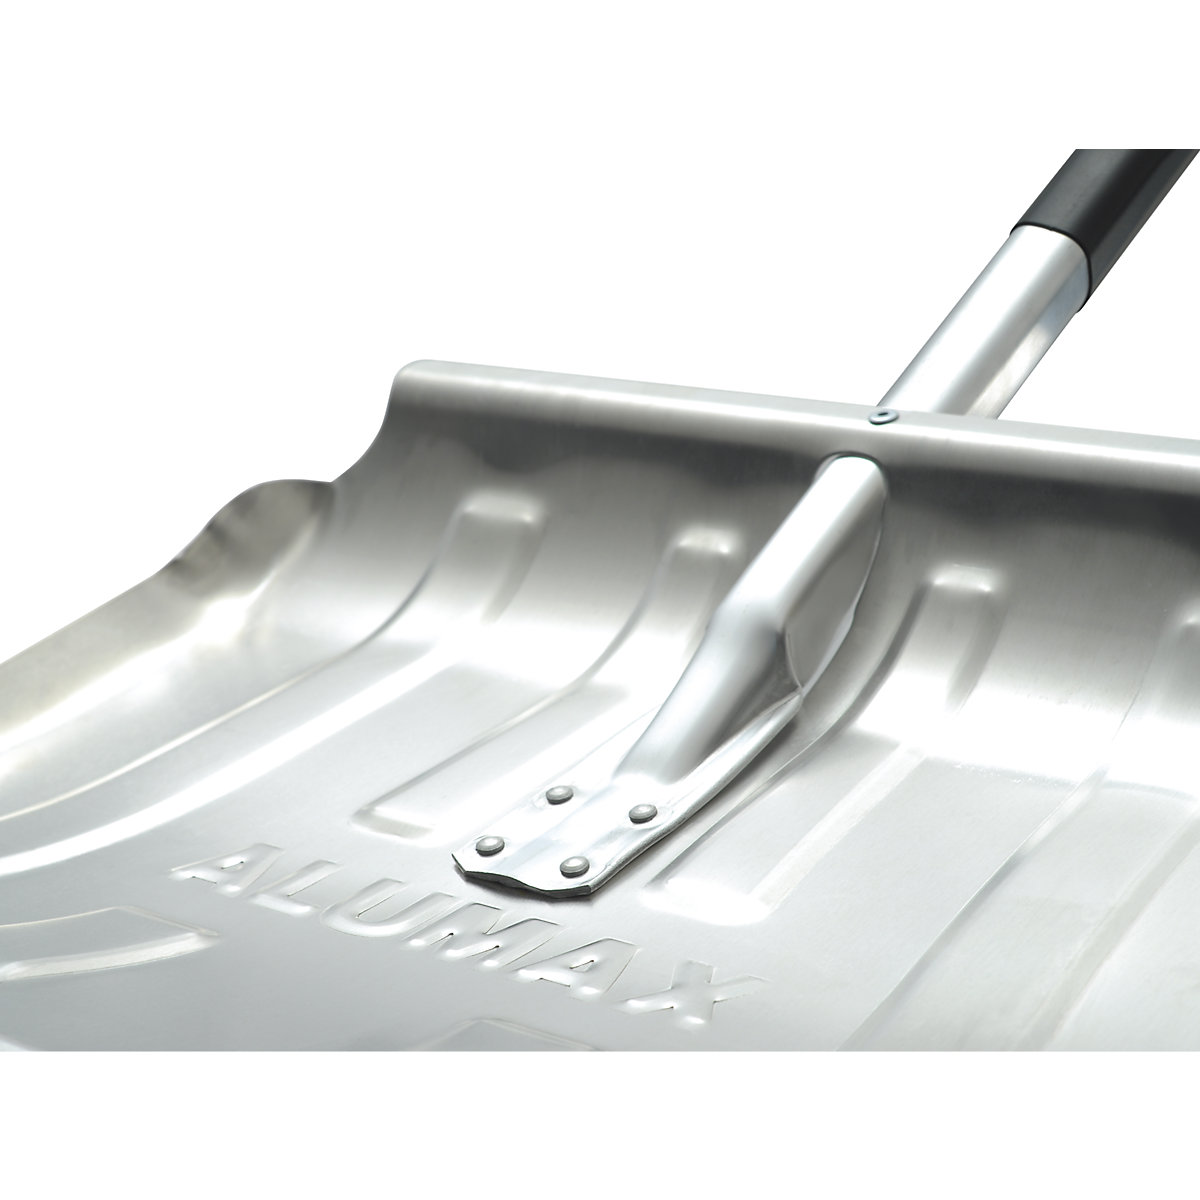 Pelle à neige en aluminium – FLORA: l x h pelle 500 x 340 mm, lot de 5